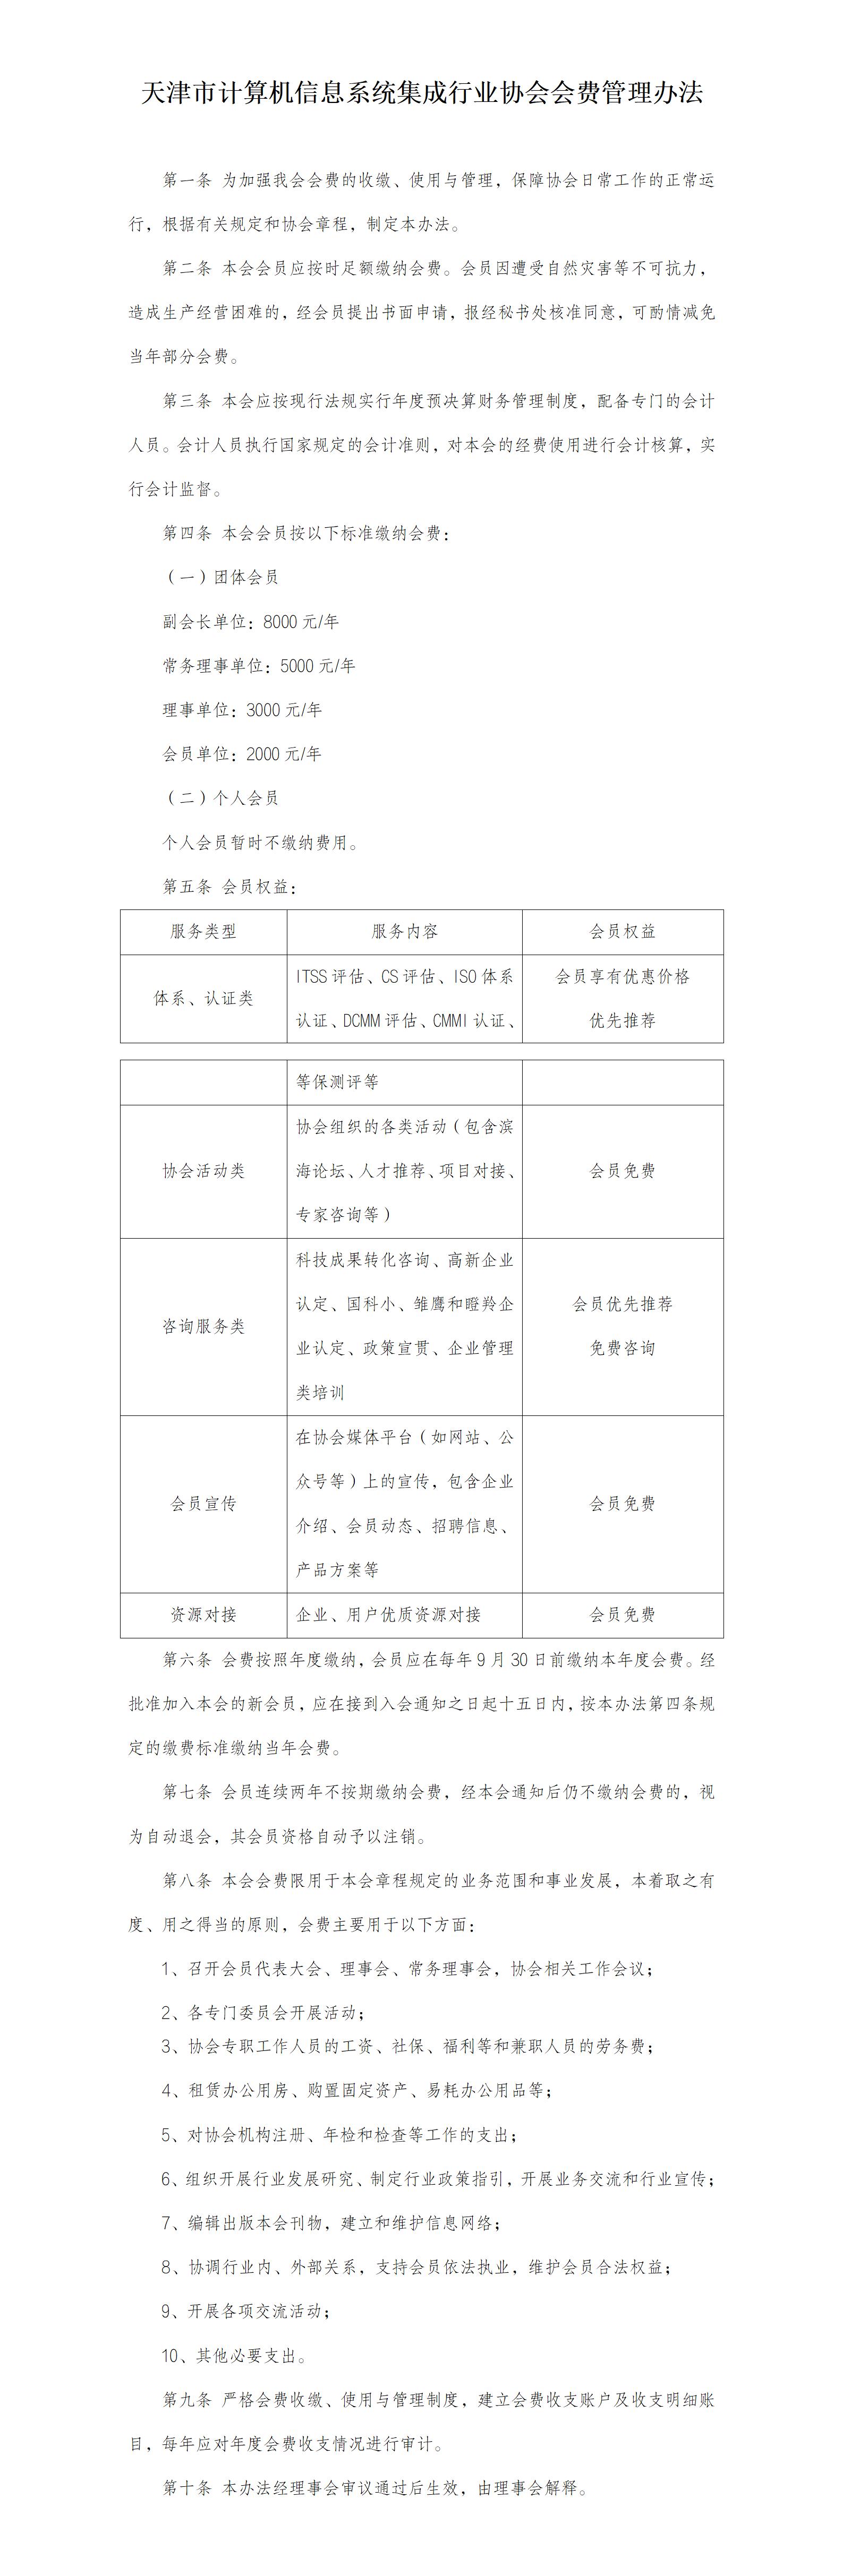 天津市计算机信息系统集成行业协会会费管理办法_01.jpg